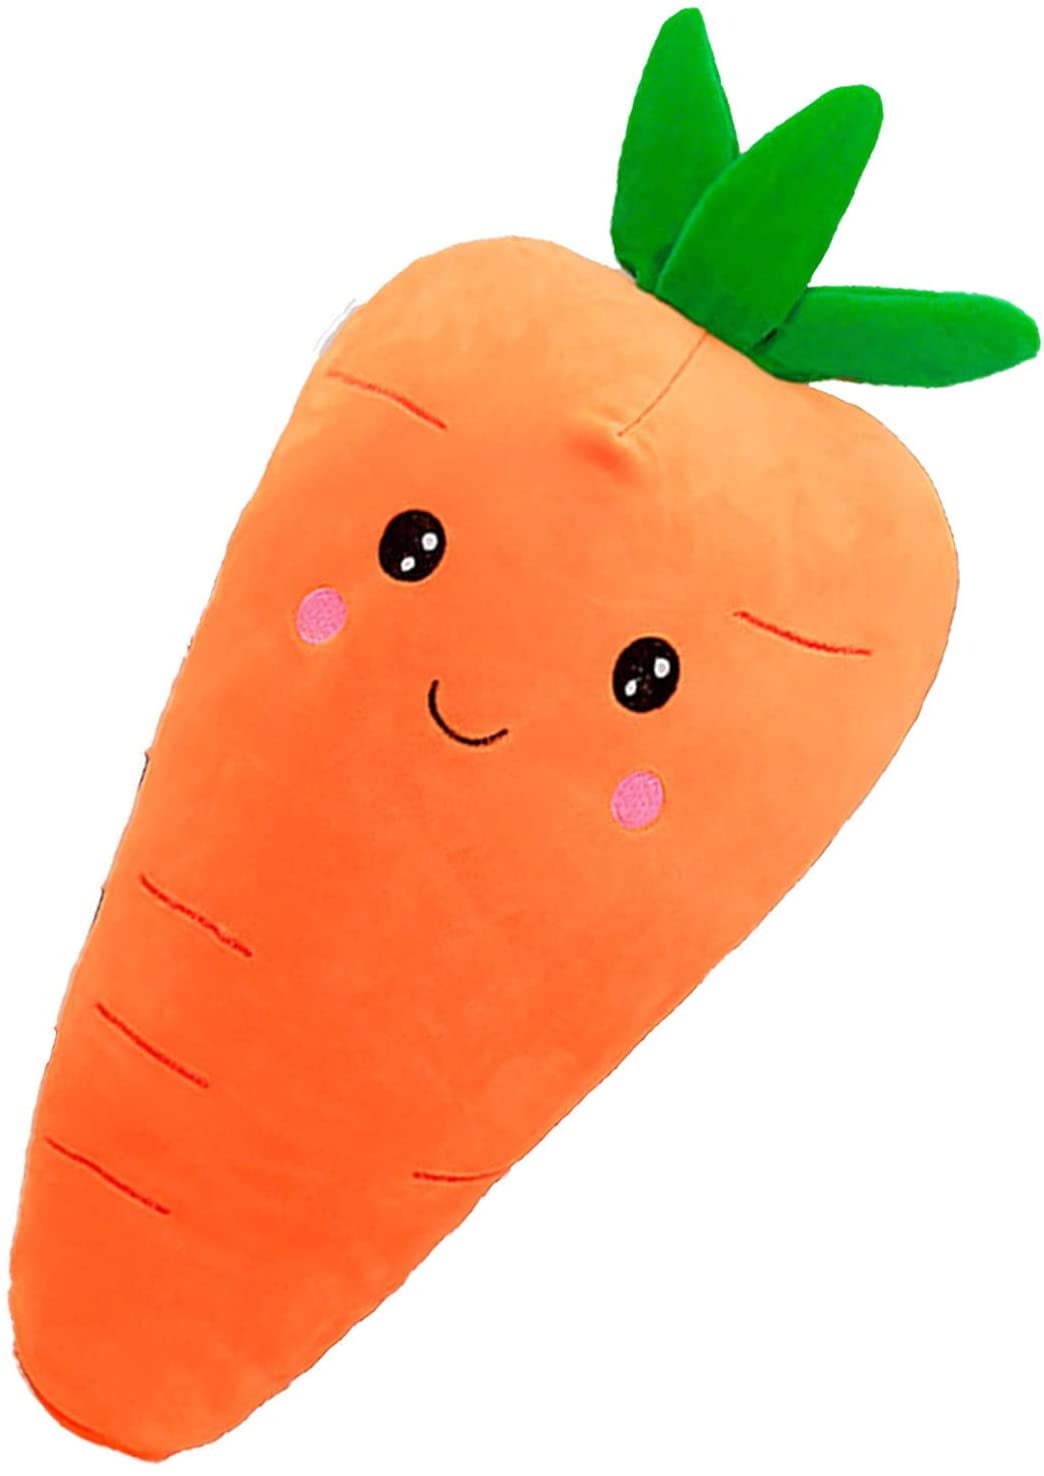 Fluffy Plush Cute Carrot Pillow 